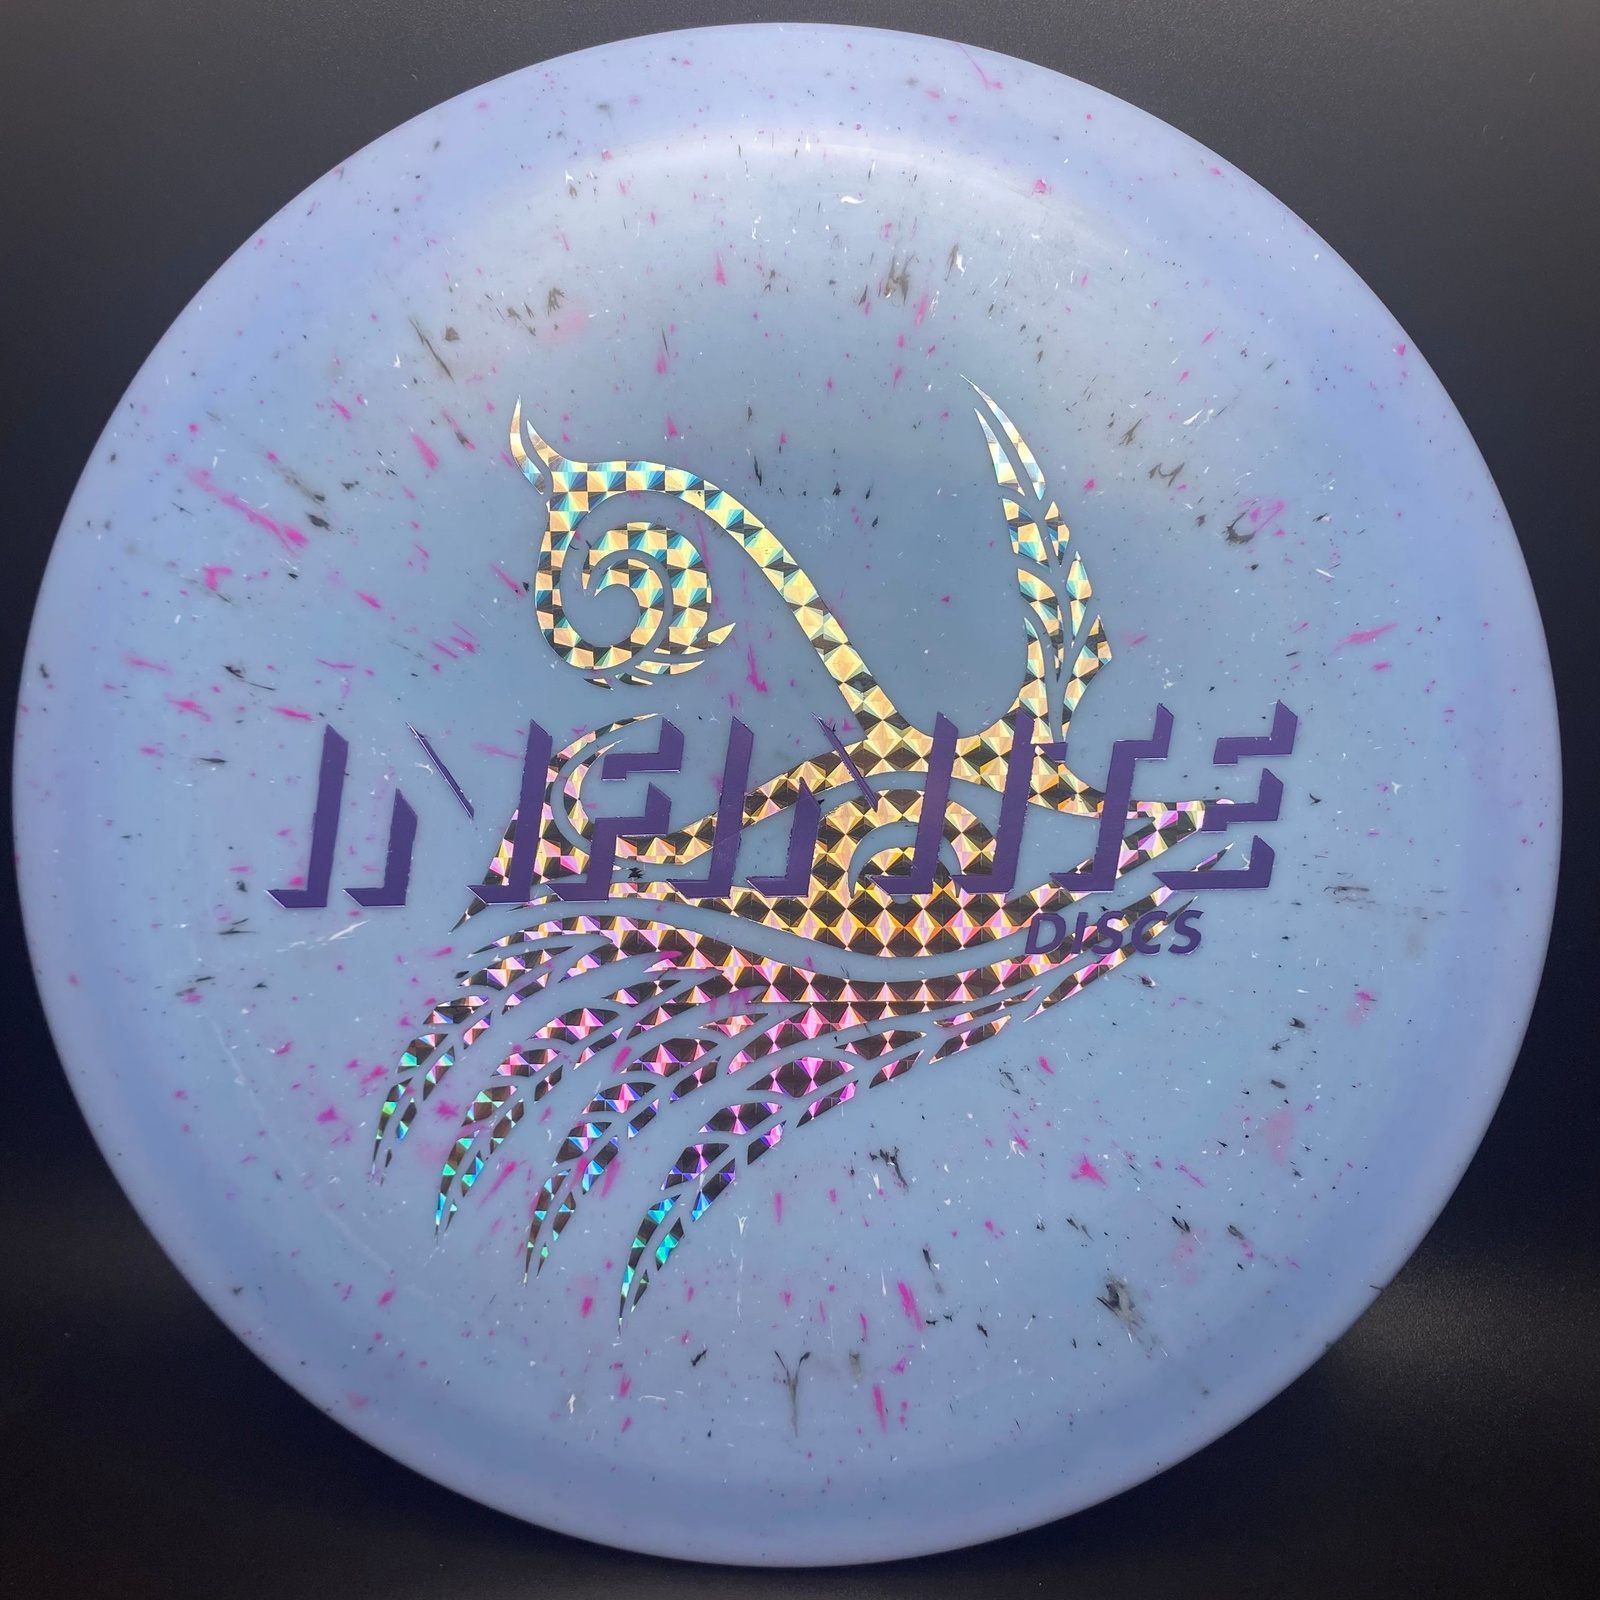 Splatter S-Blend Exodus - Double Stamps! Infinite Discs